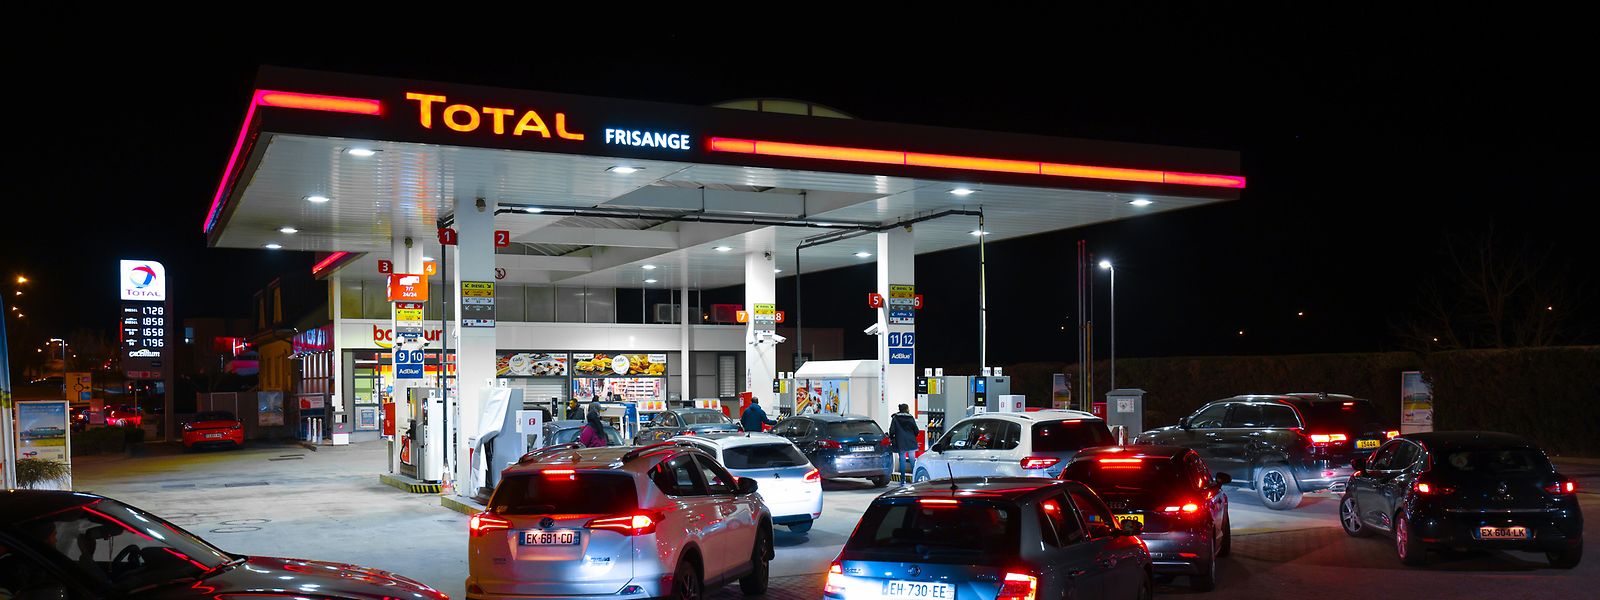 Ce mercredi 9 mars, les files d'attente étaient longues dans les stations-service du pays, après l'annonce à 18h de l'augmentation des prix des carburants.